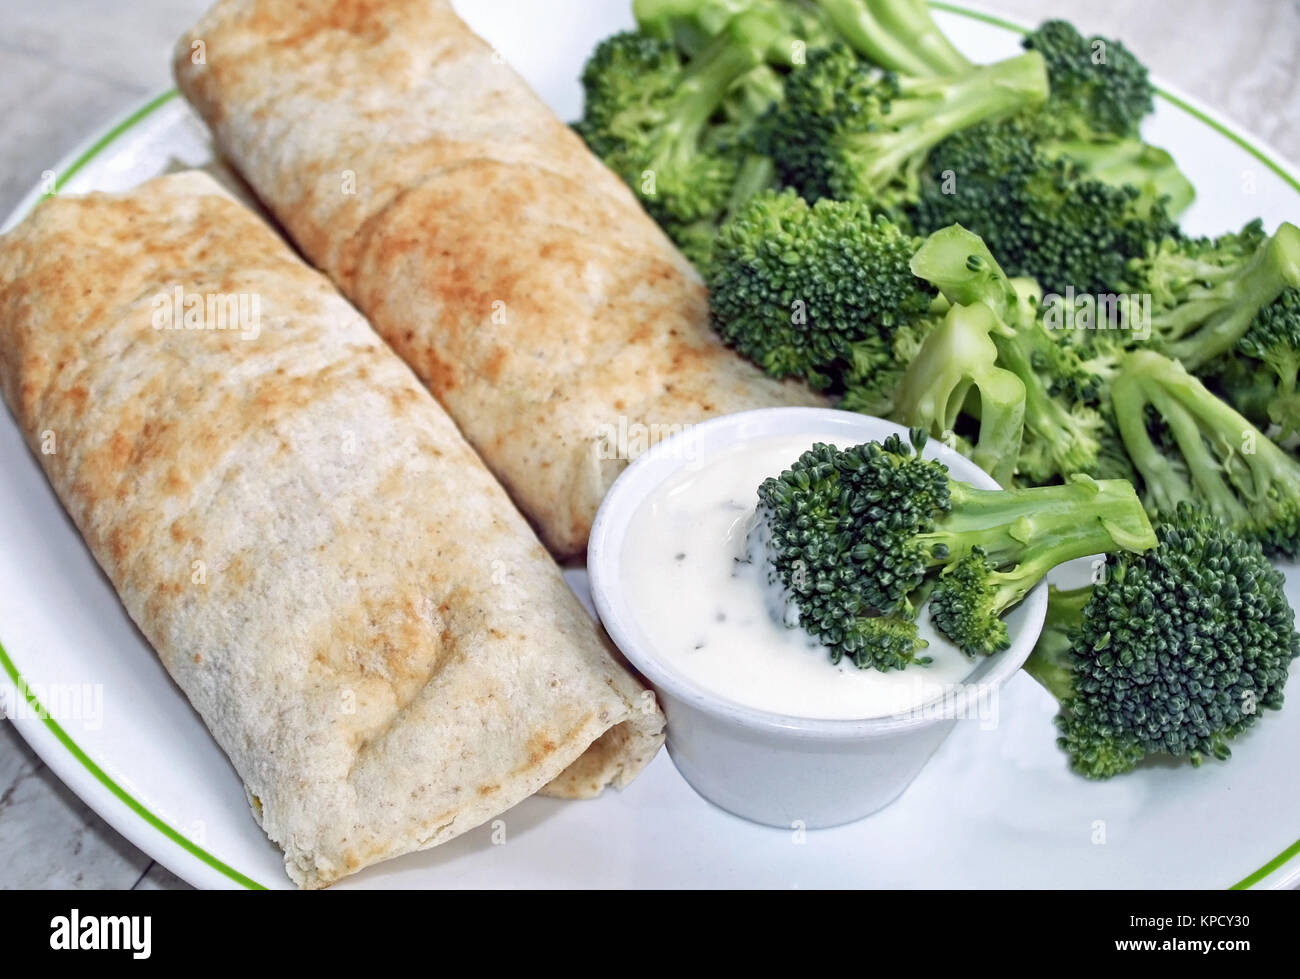 Zwei gefüllte Tortilla Wraps mit einer Seite der frischen Brokkoli und ein Container für cremige Dressing zum Dippen Stockfoto